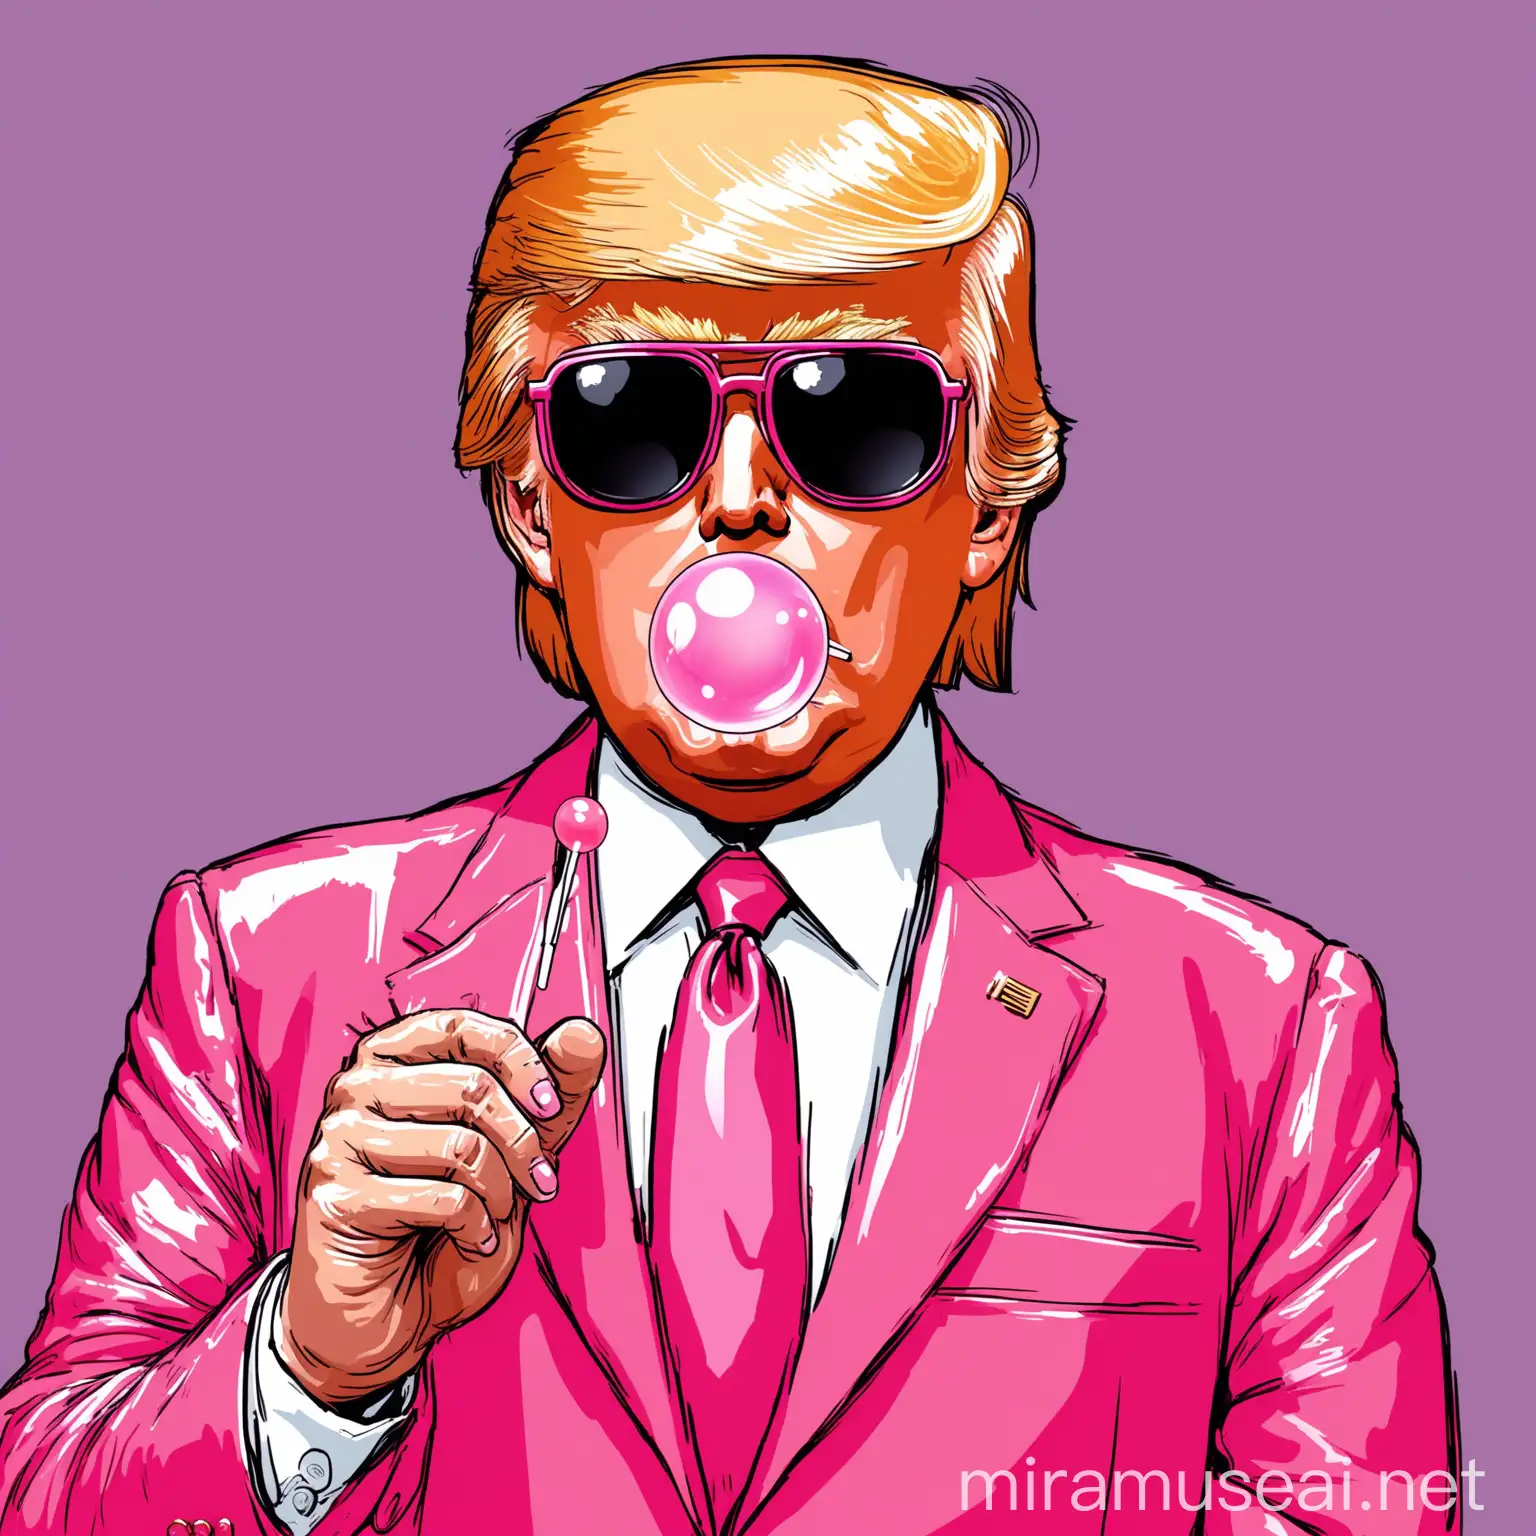 Donald Trump Portrait in Pink Suit Blowing Bubble Gum with Lollipop